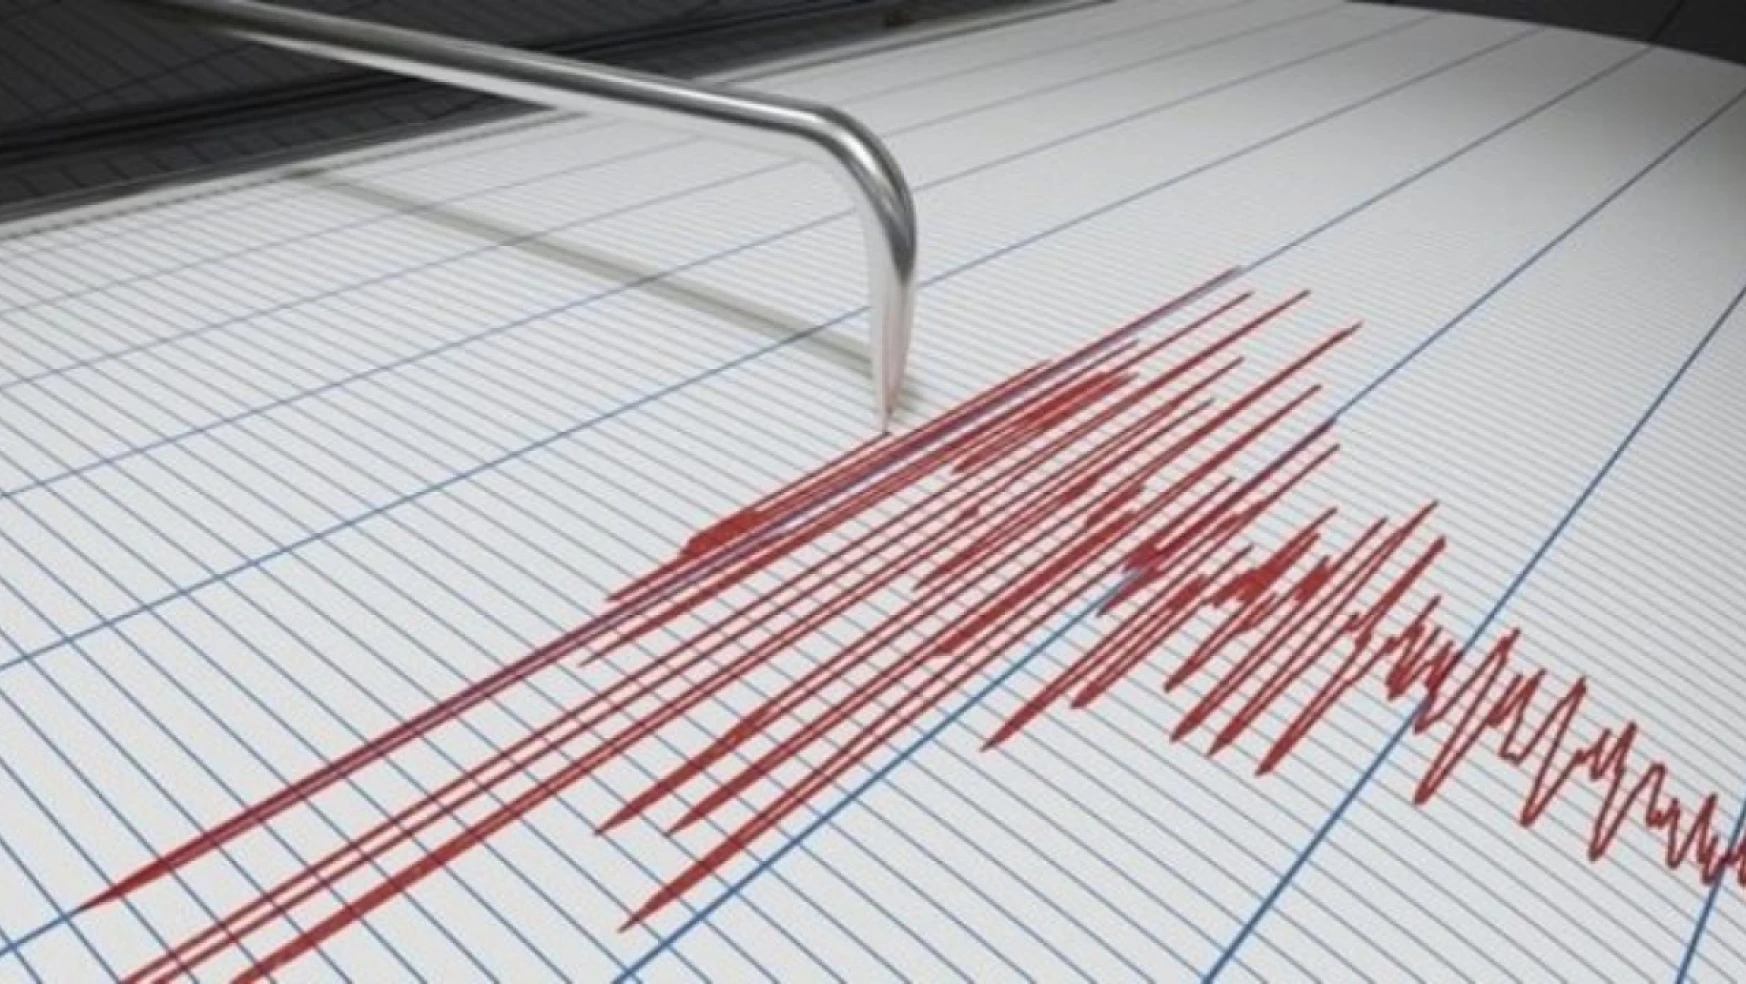 Malatya'da 4.7 büyüklüğünde deprem meydana geldi